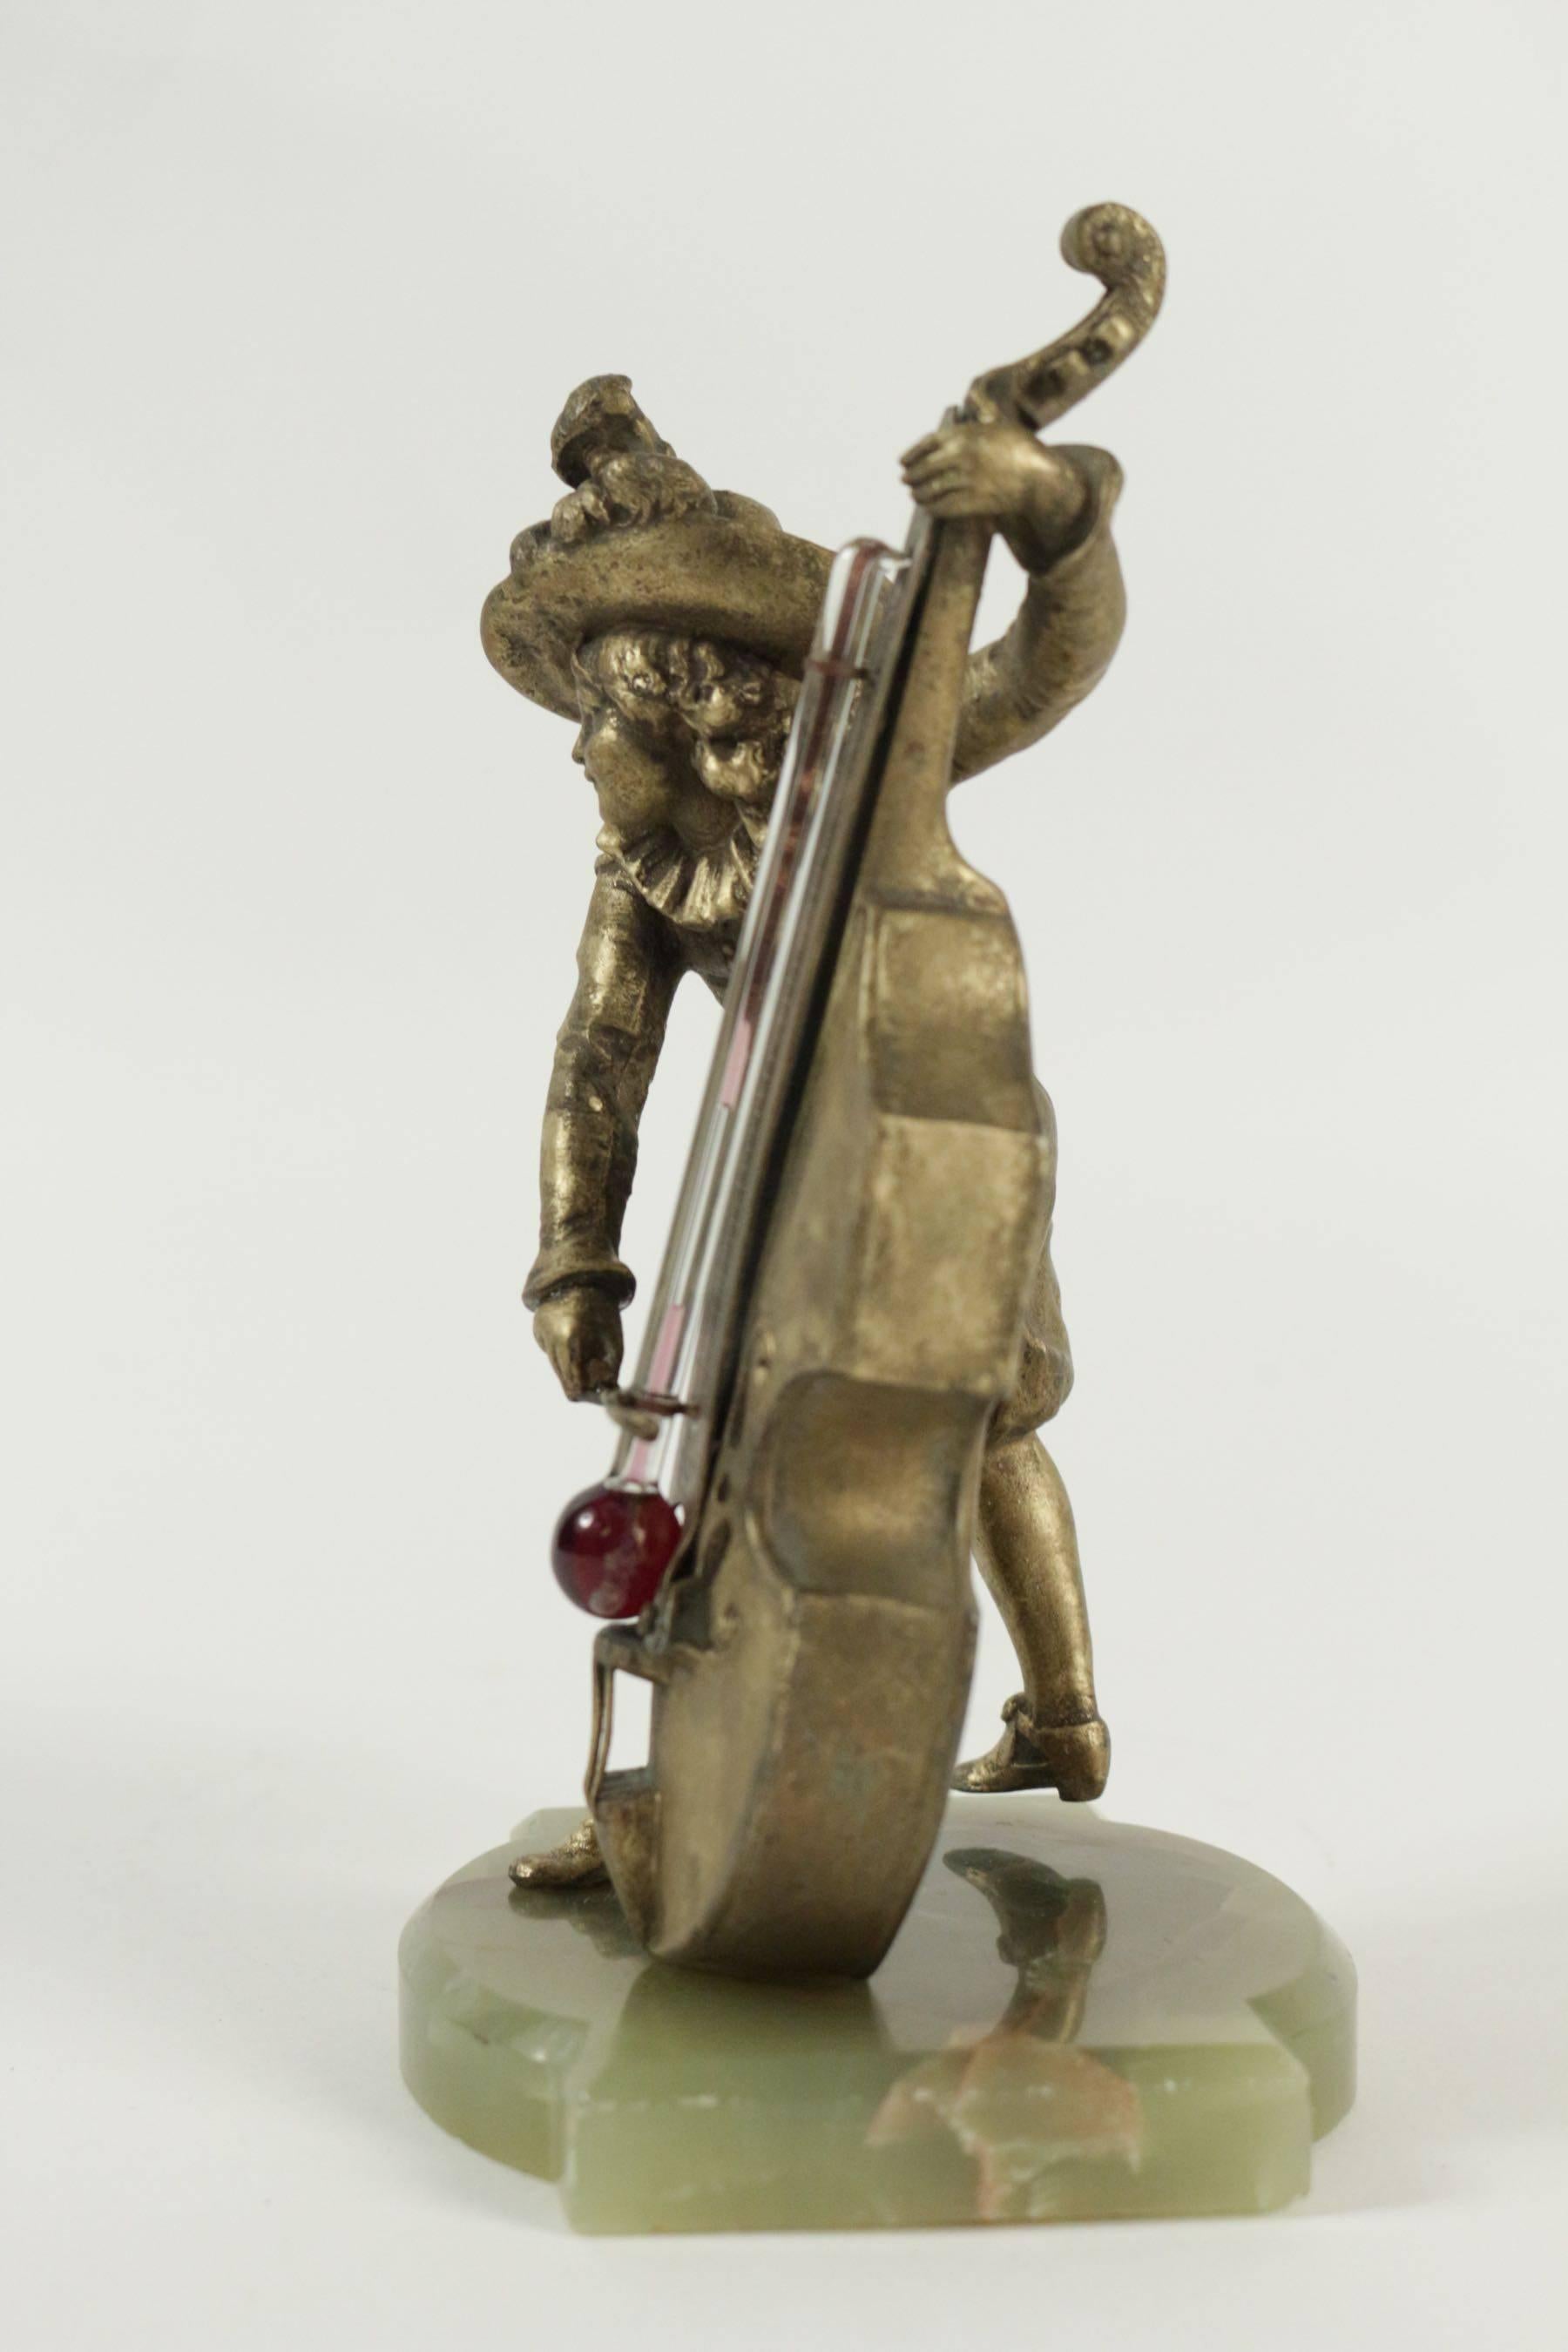 Baromètre régulateur et socle en pierre semi-précieuse représentant un joueur de Cello à l'antique. 
Mesures : H 20cm, L 10cm.